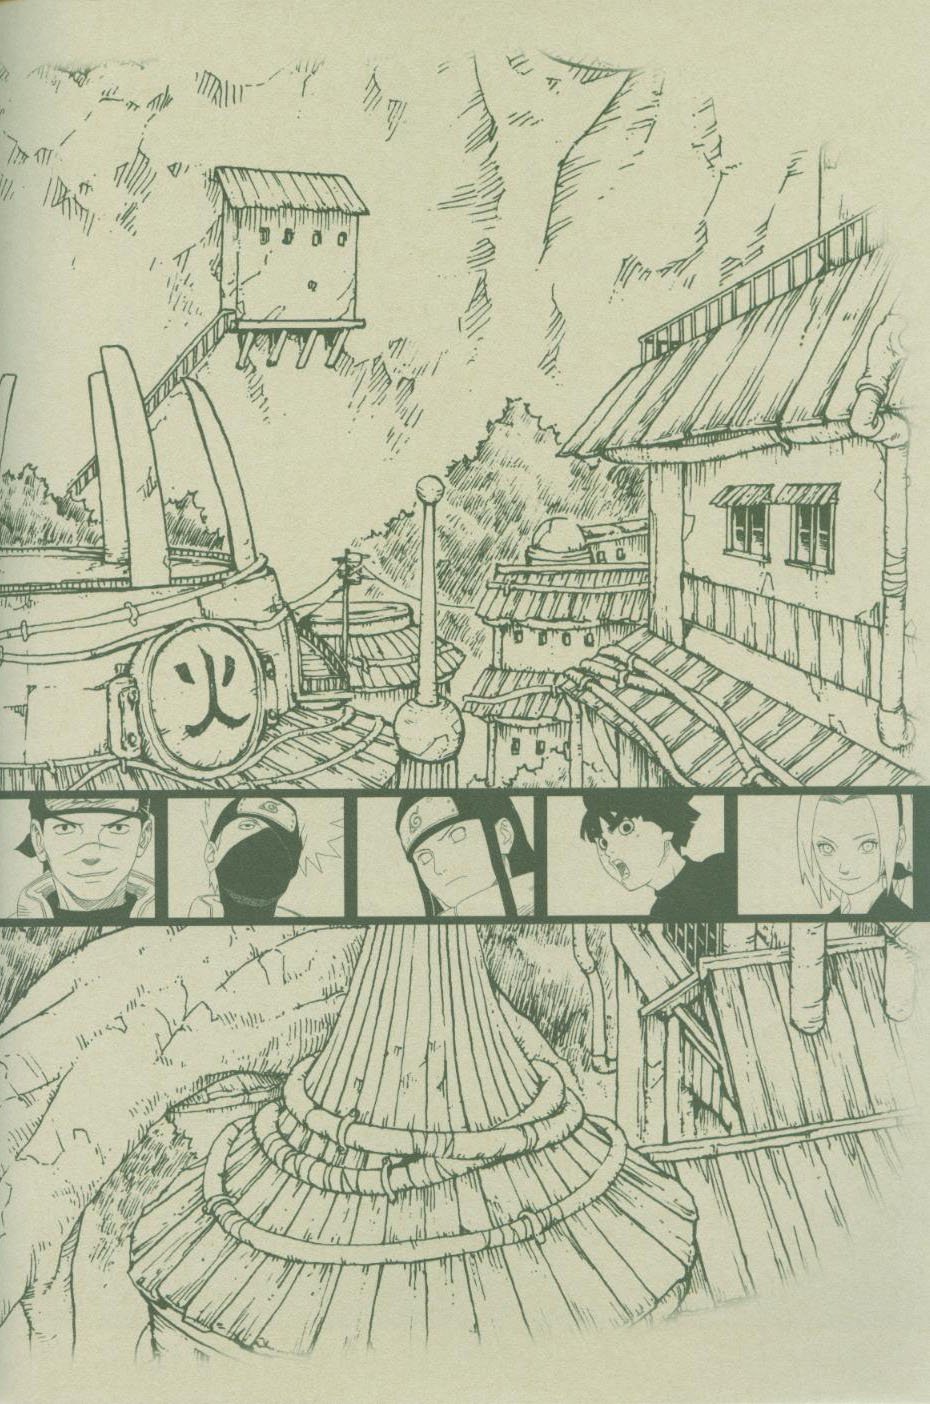 Манга Аниме "Наруто" - артбук "Узумаки" - Глава 1 Страница 138